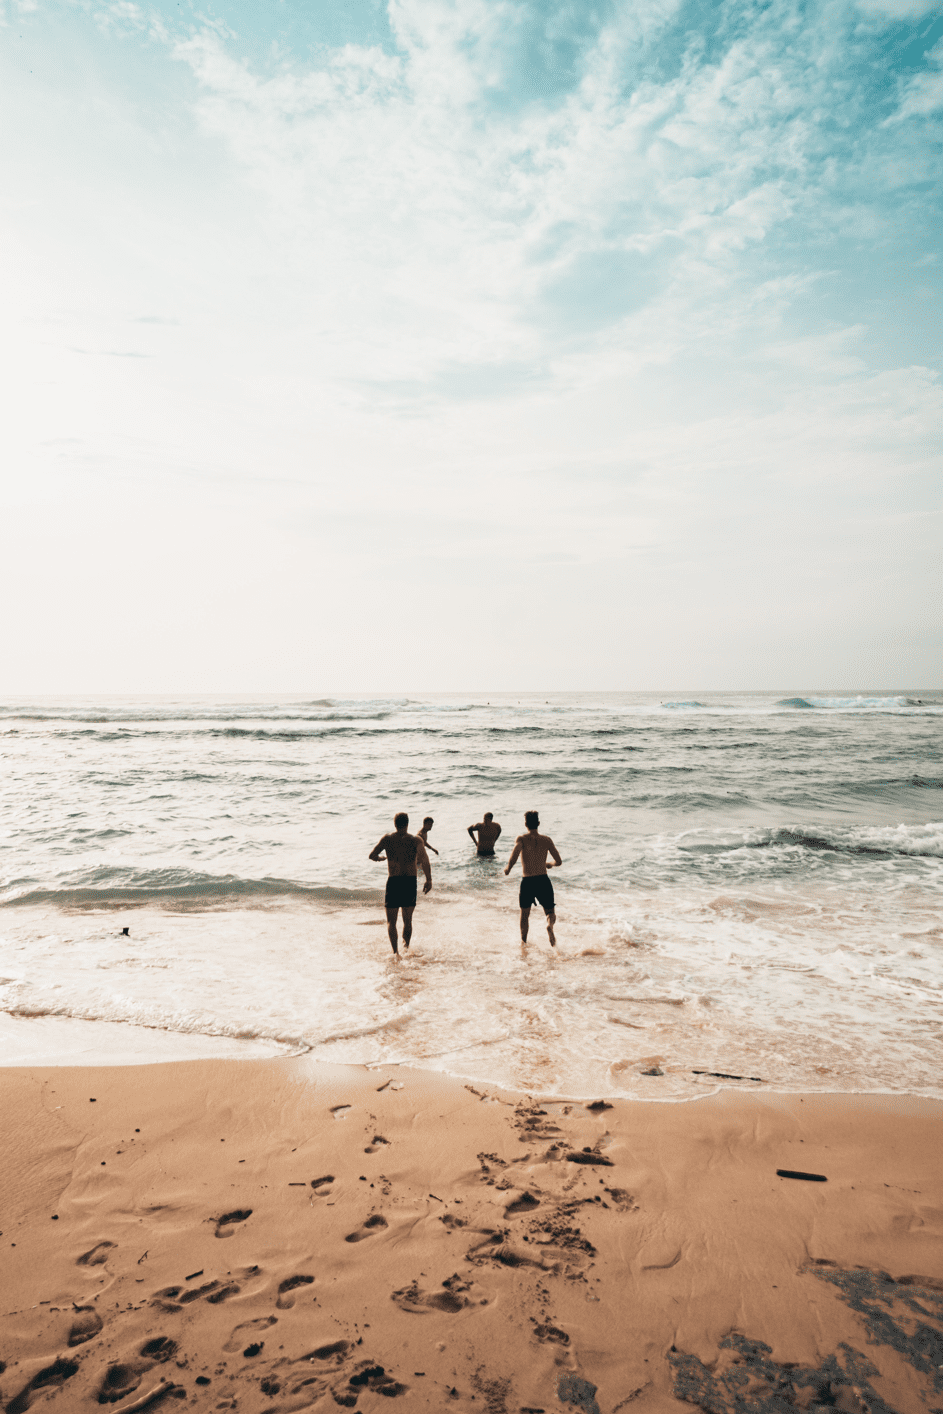 Die Freundesgruppe genoss einen letzten Tag am Strand. | Quelle: Pexels